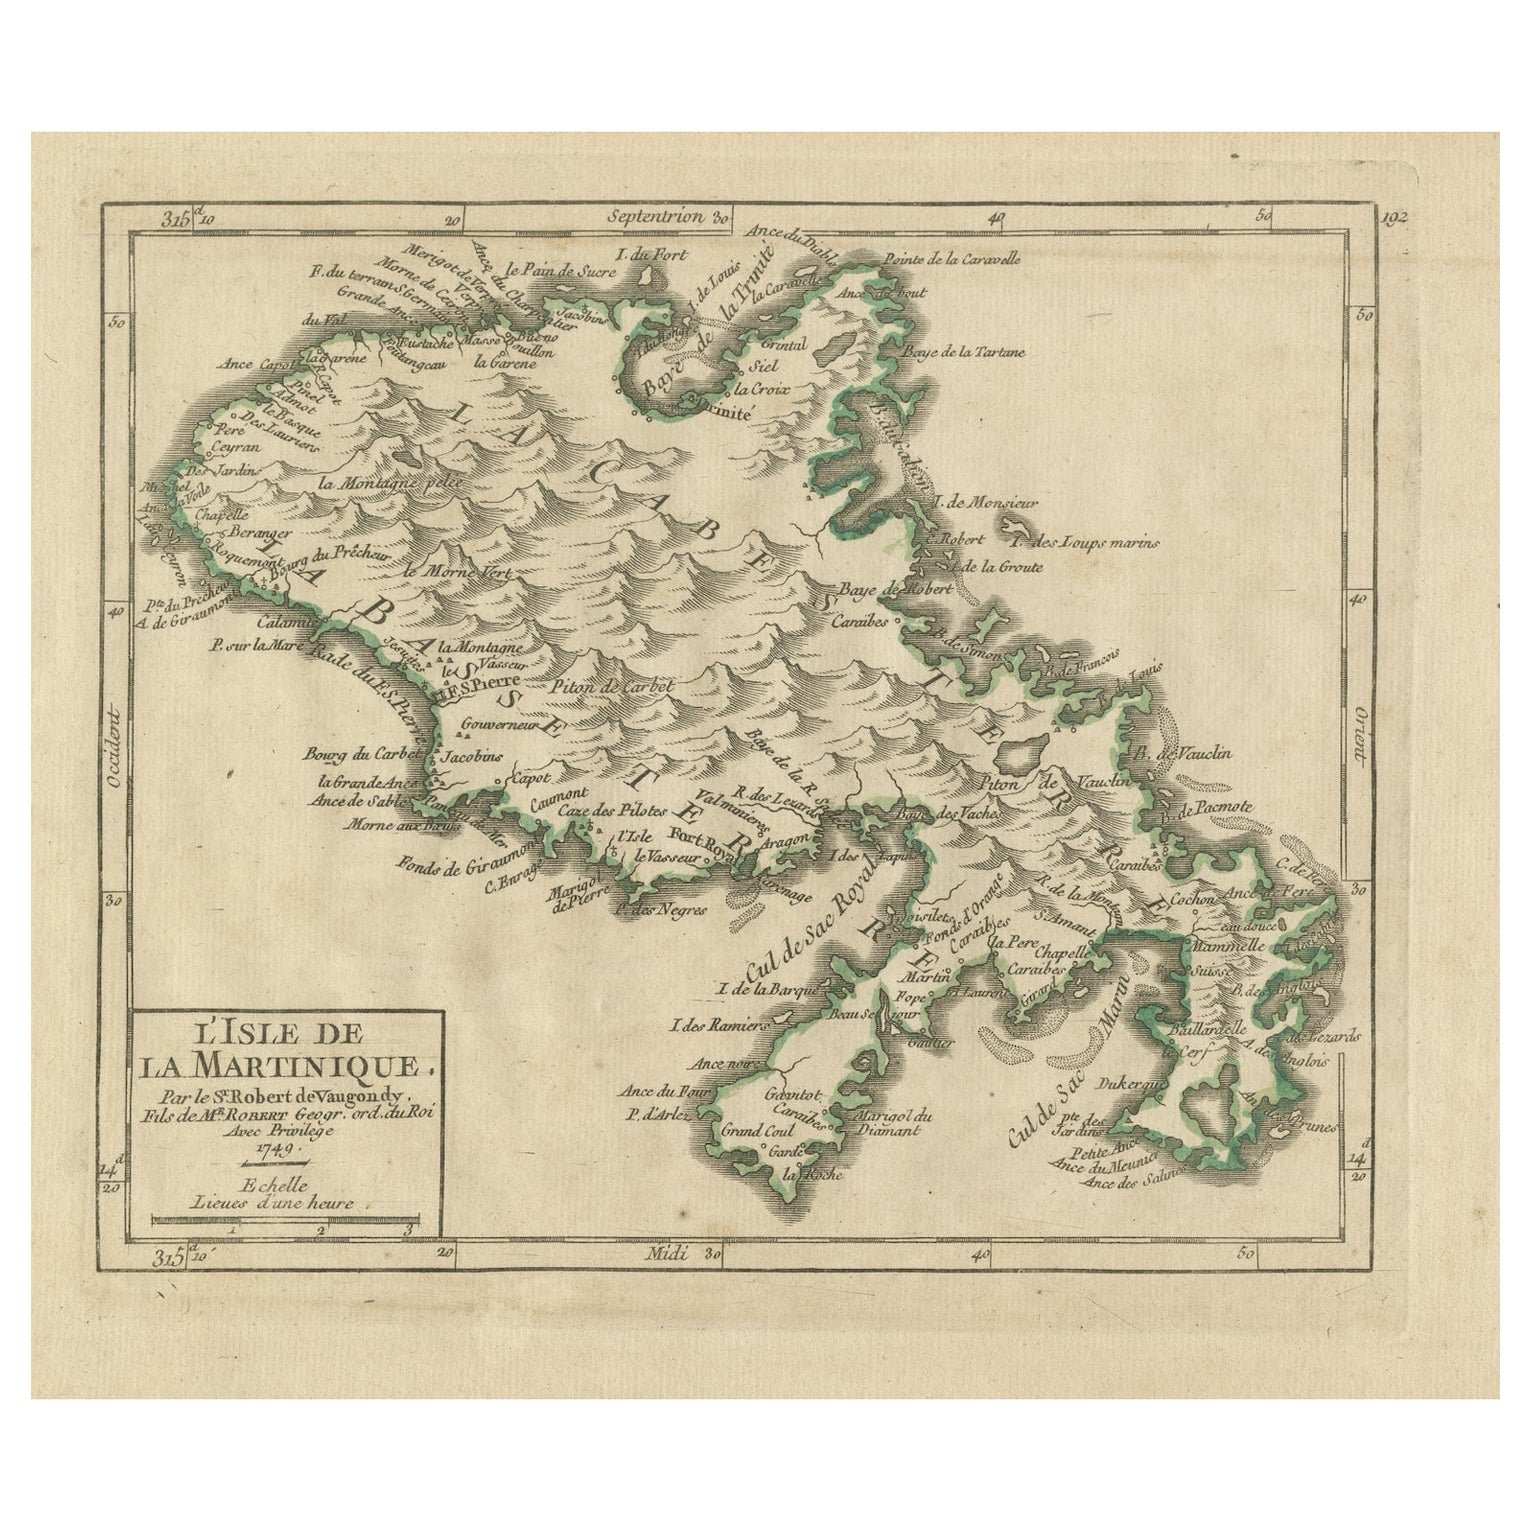 Original Historical Map of L'Ile De La Martinique by Vaugondy, 1749